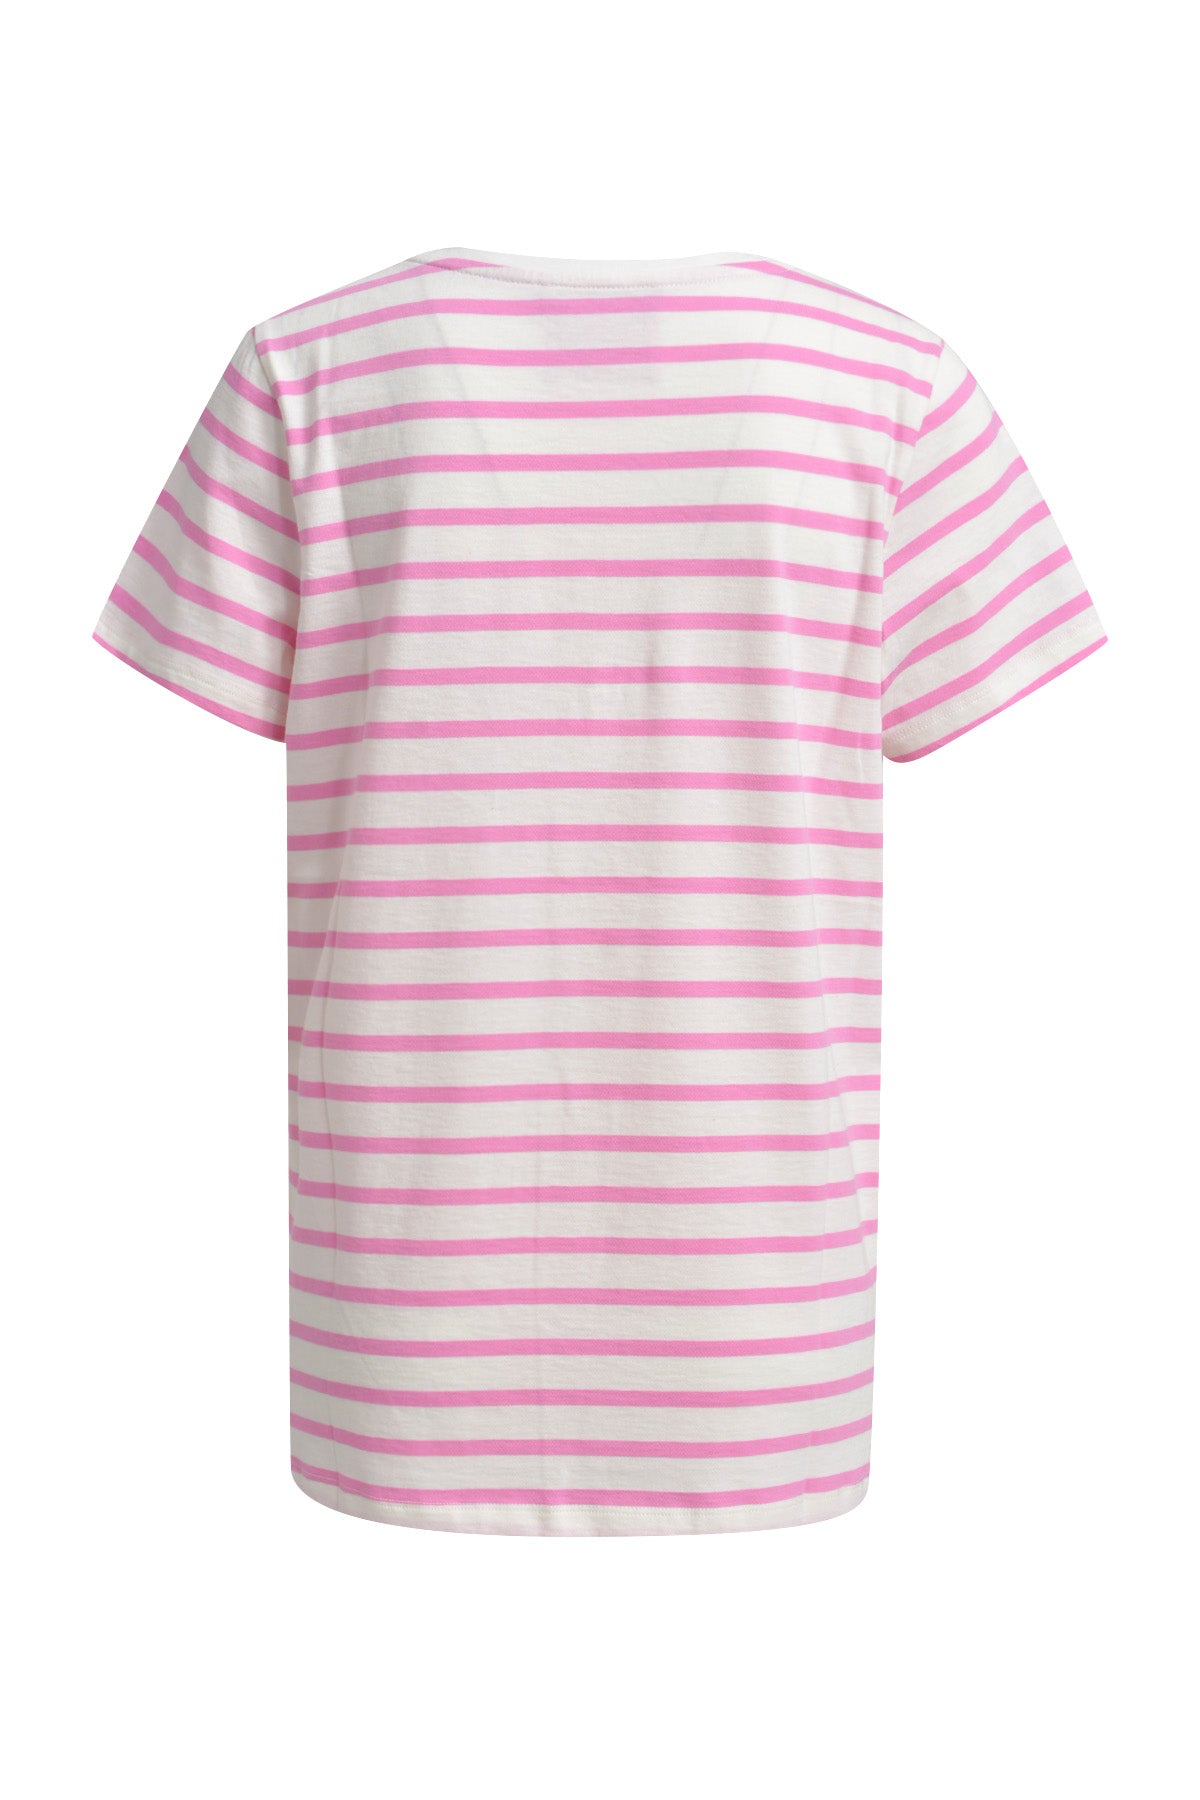 Smith & Soul 0224-0214-S stripe t-shirt